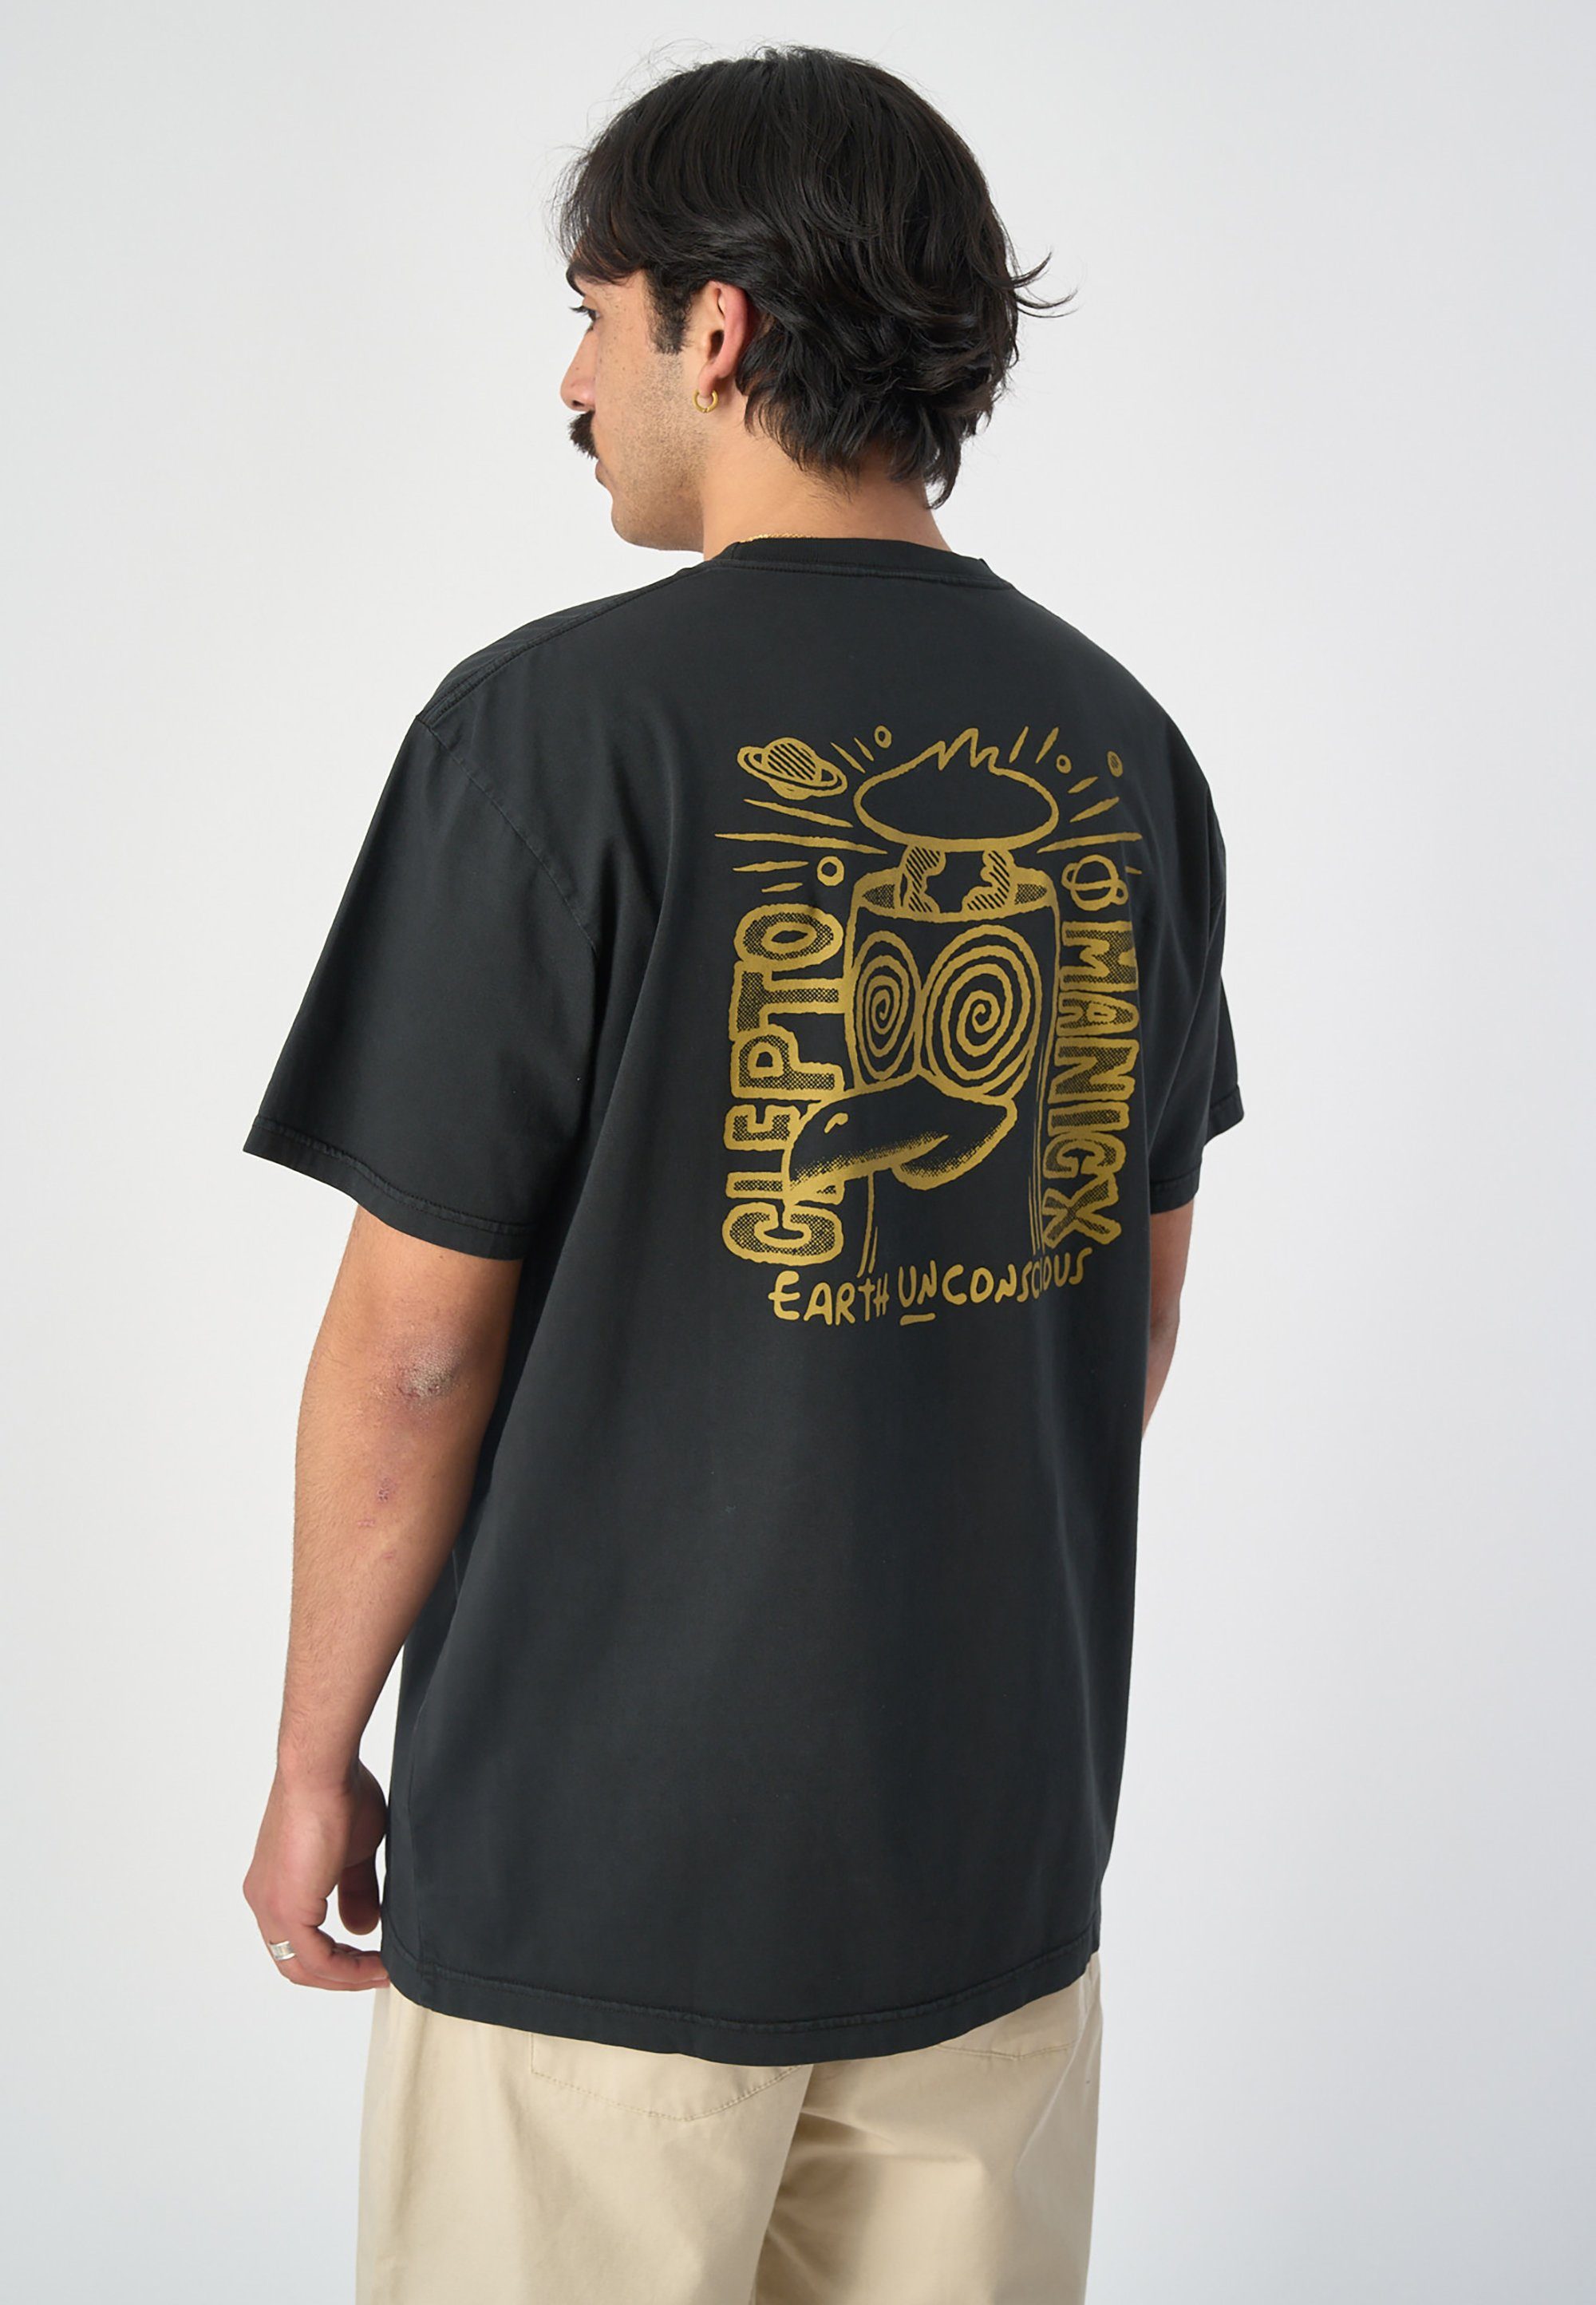 Unconscious T-Shirt coolem Cleptomanicx Print schwarz mit